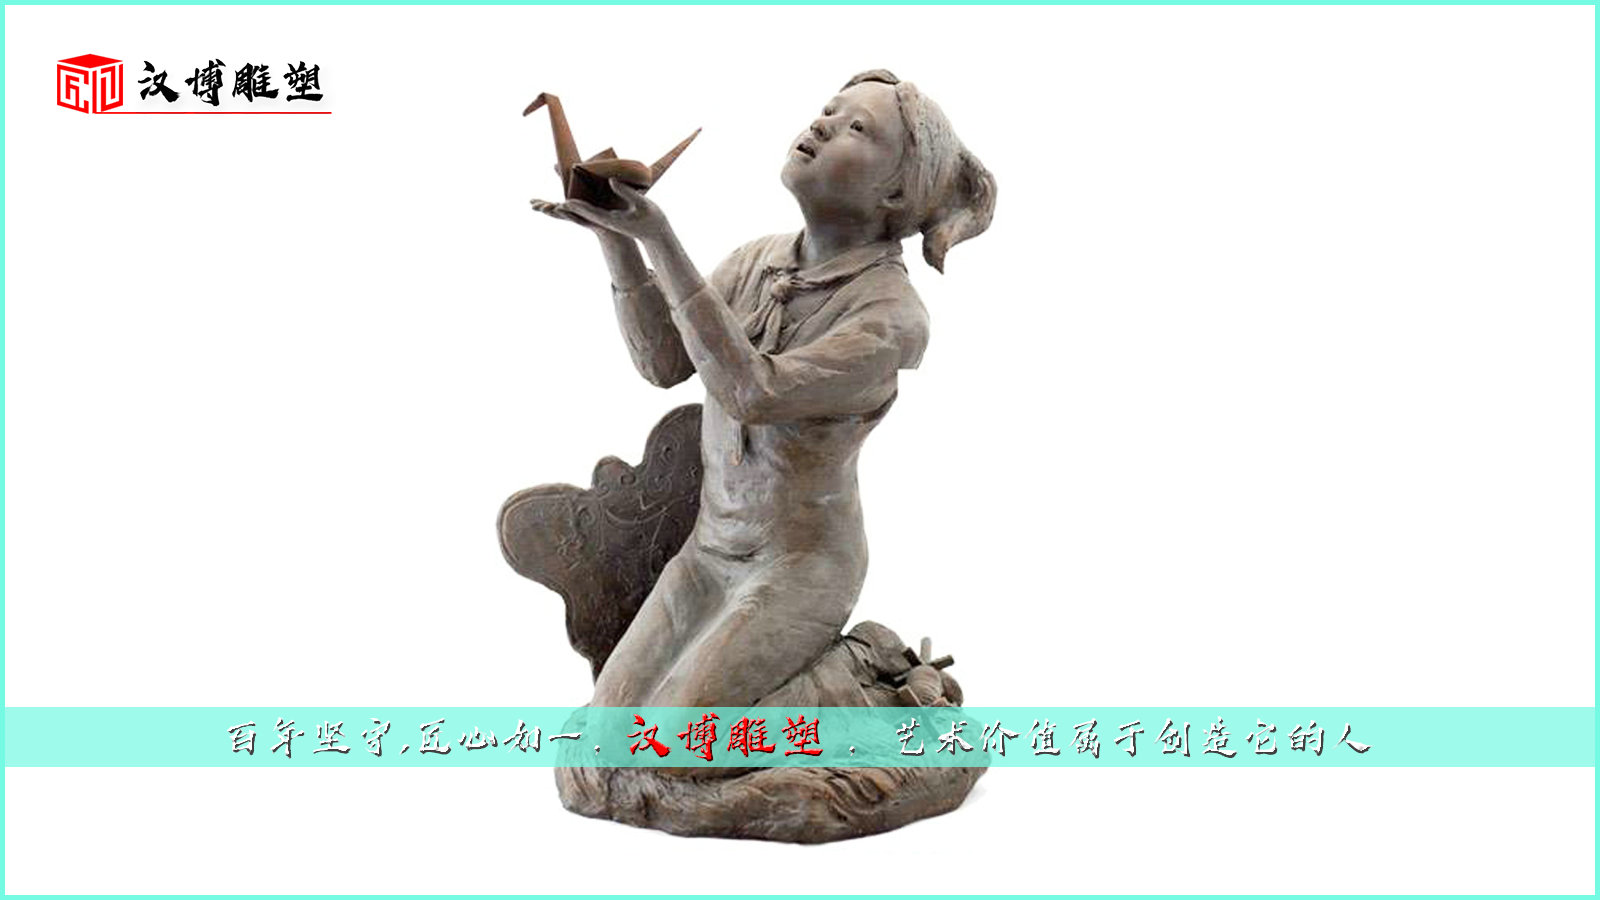 户外景观雕塑,人物铜像定制,传统文化雕塑